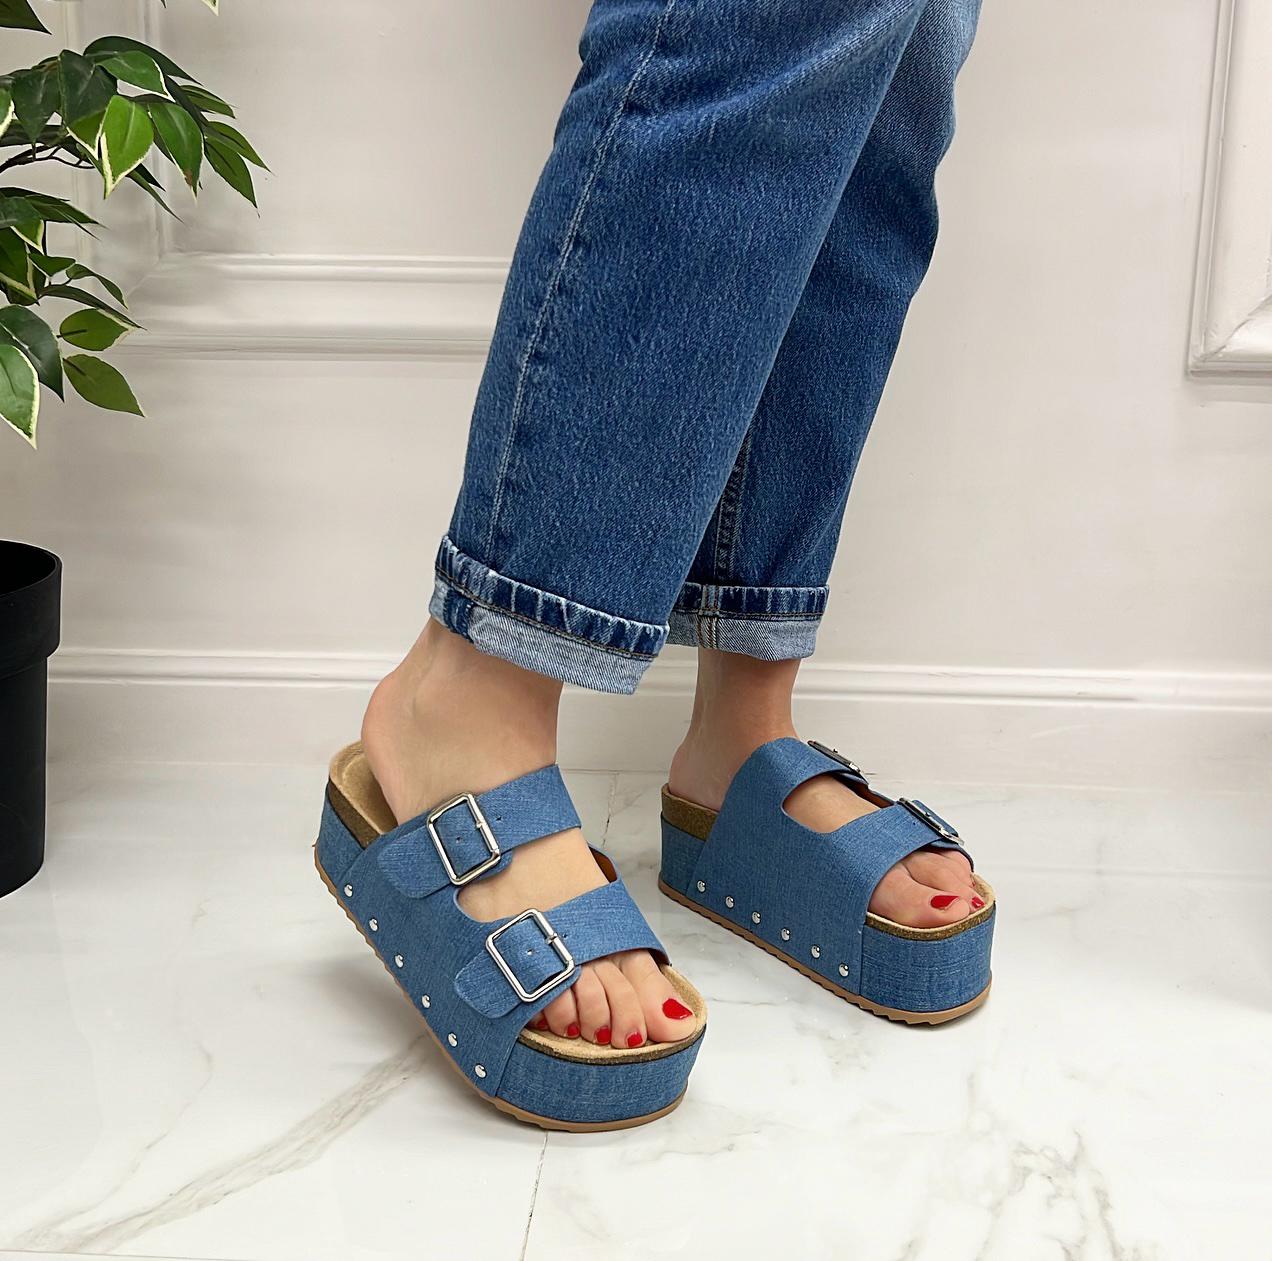 Lierin - Sandalo Donna Casual Comodo Fibbie Jeans Blu